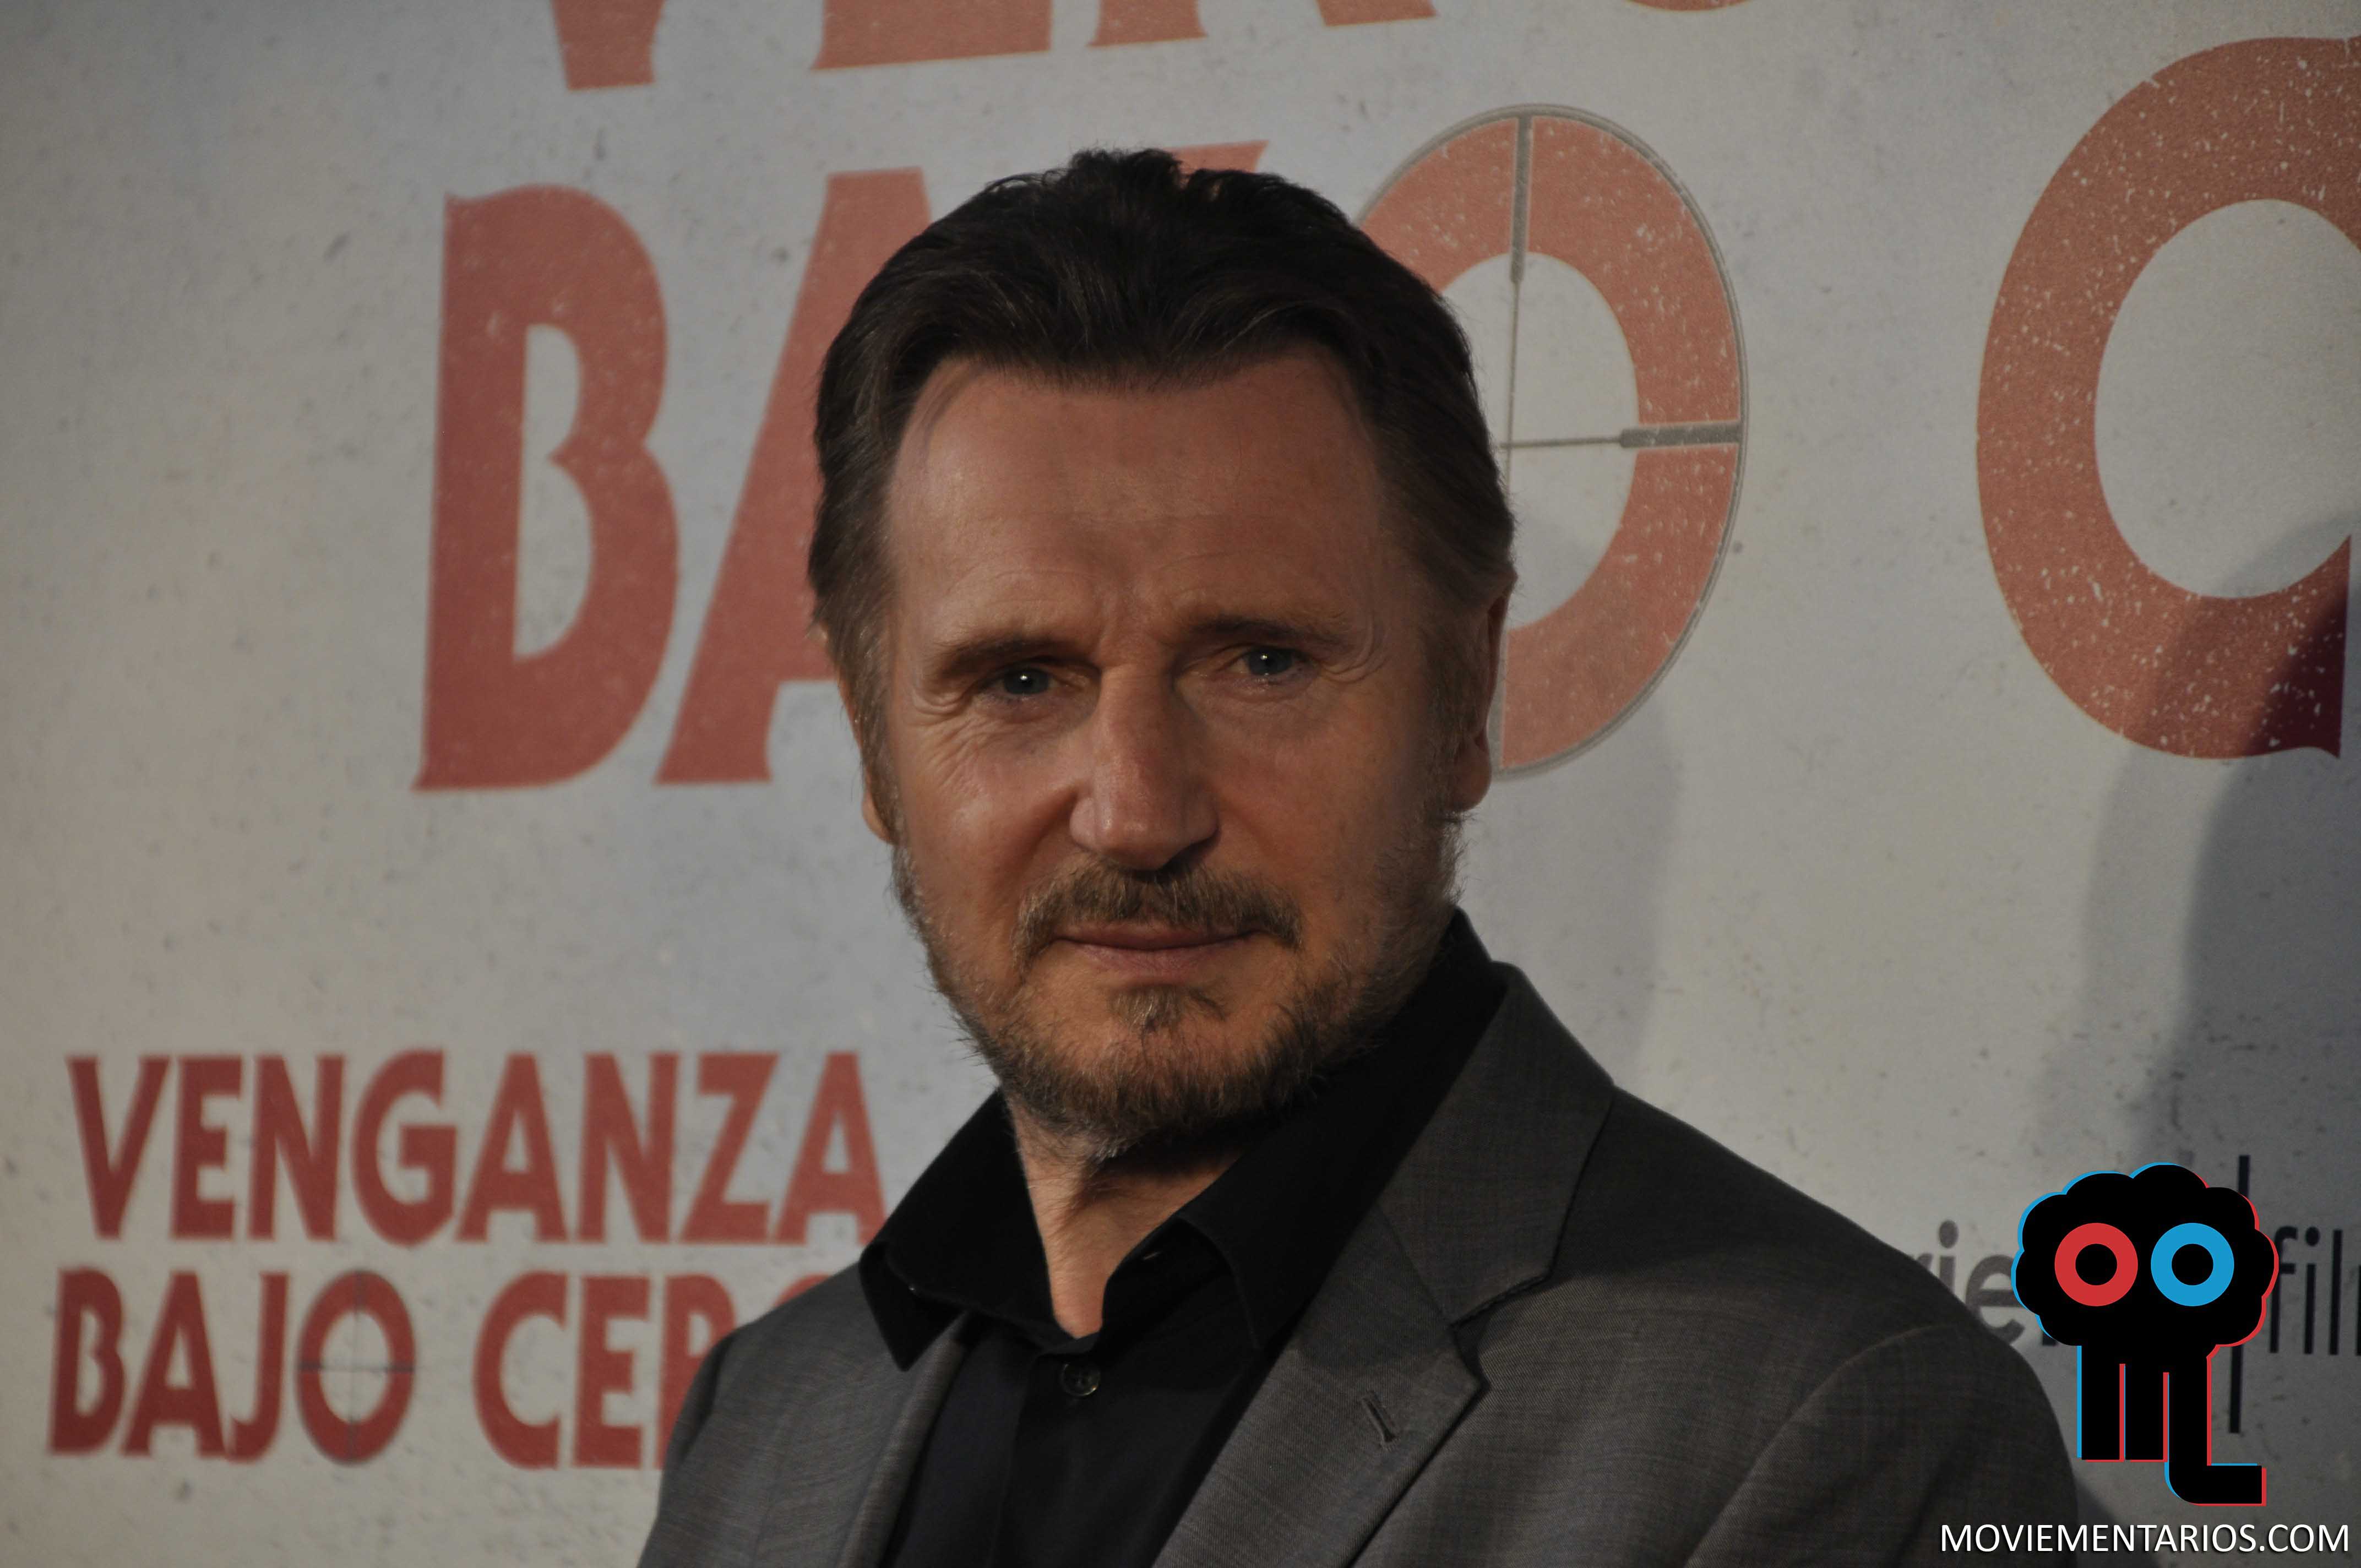 Premiere de ‘Venganza bajo cero’ con Liam Neeson